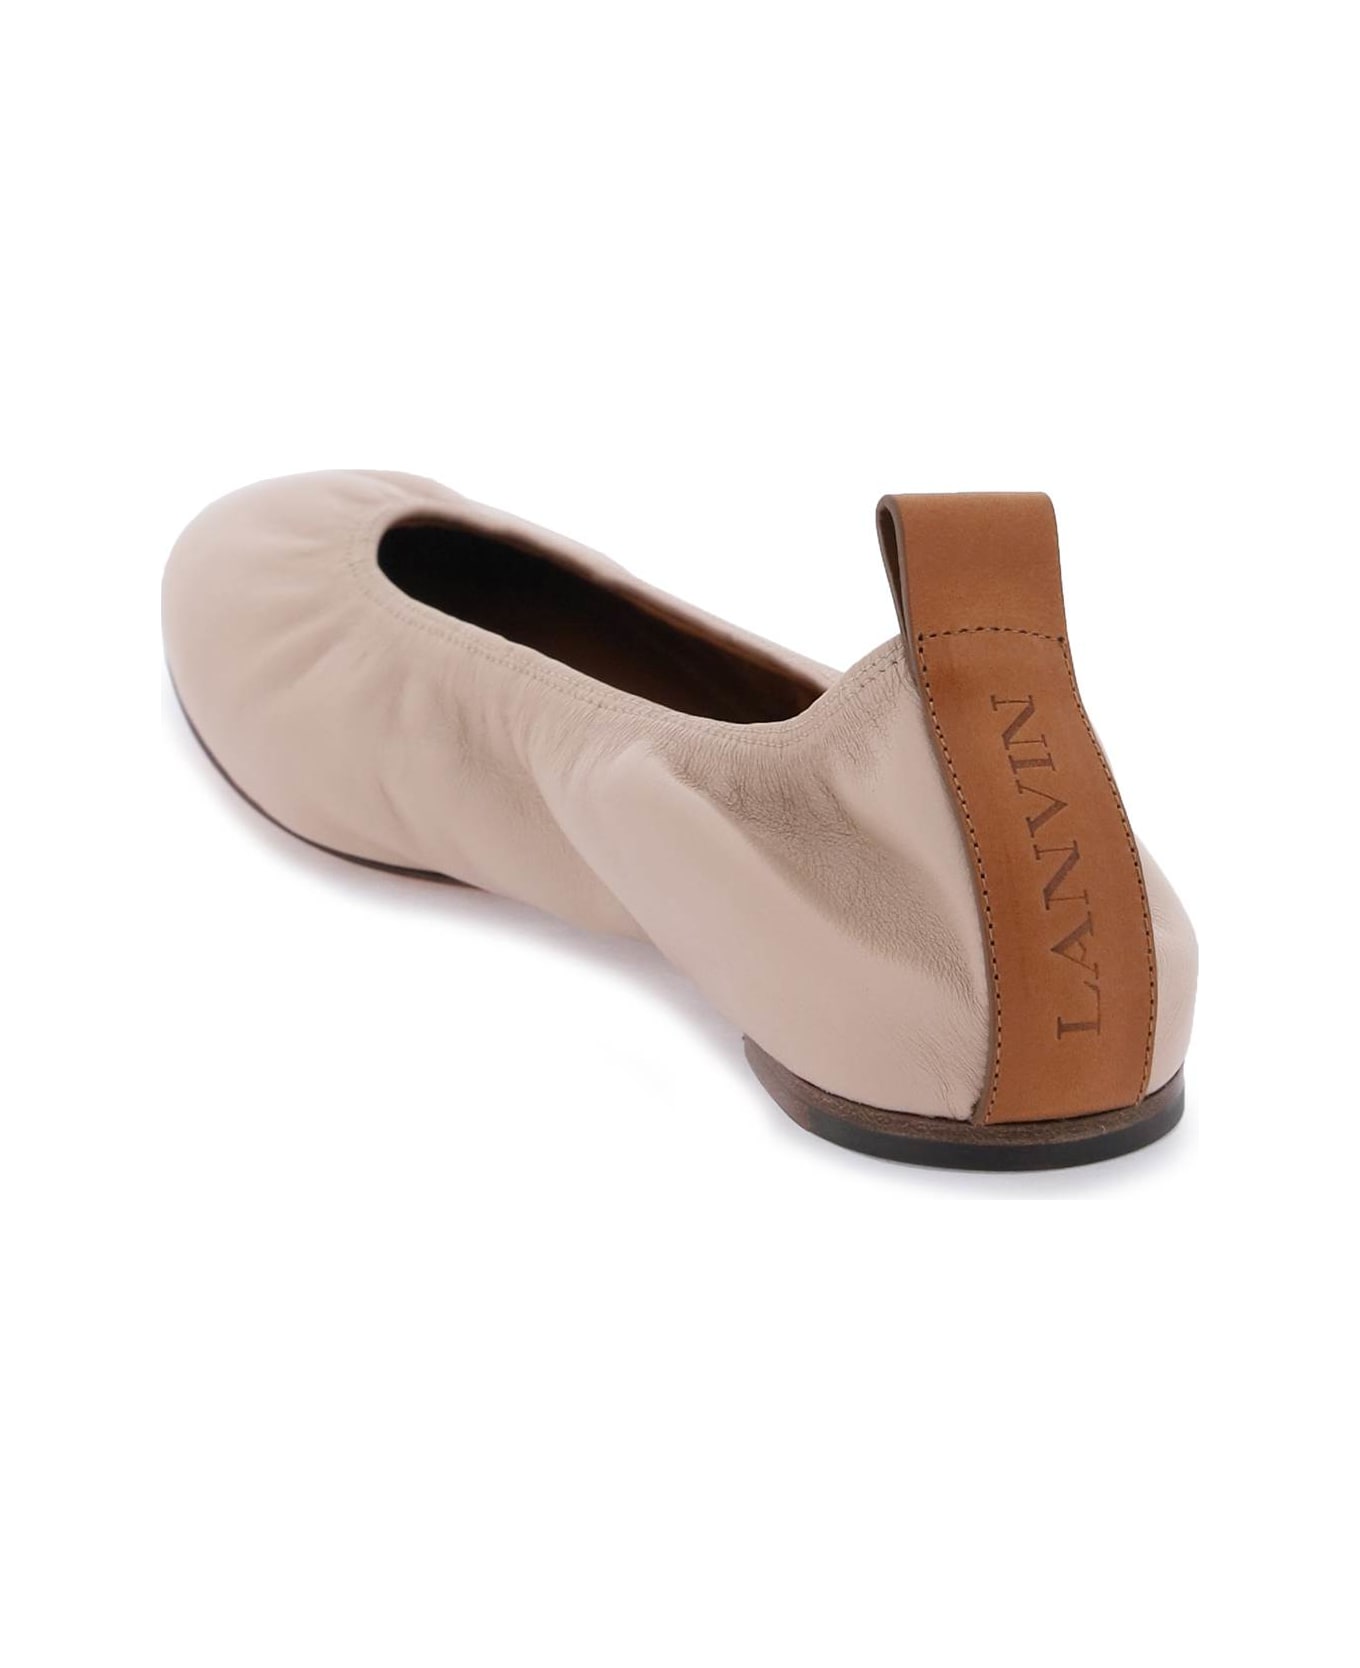 Lanvin Ruch Detailed Slip-on Ballerina Shoes - DARK BEIGE